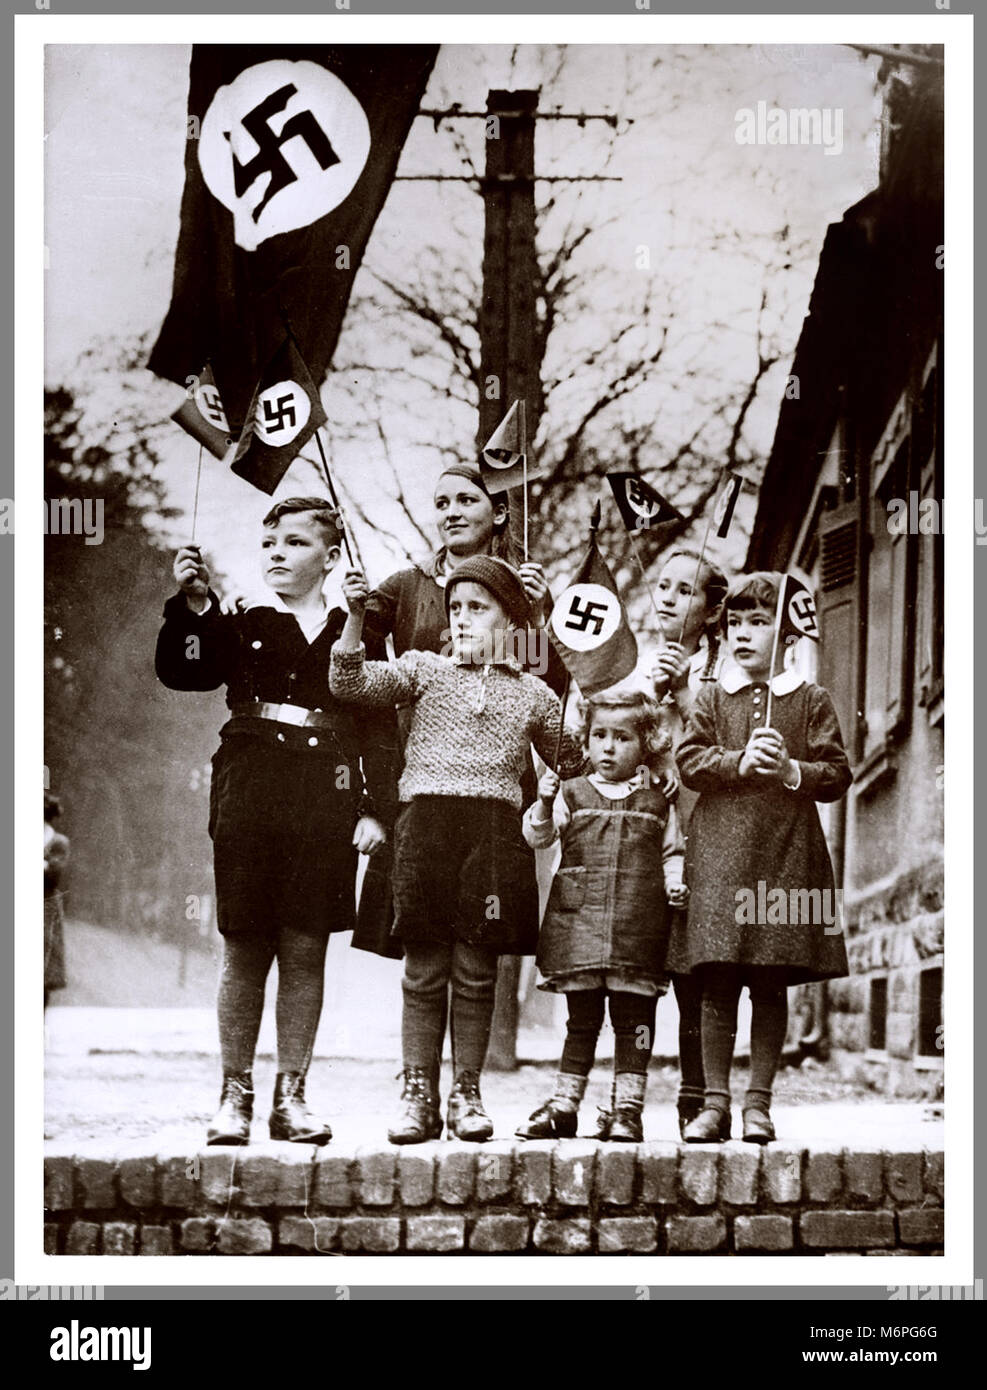 Gruppo di premurosa giovani bambini nazista sventolando bandiere con la svastica a sostegno di un locale parata nazista degli anni trenta Saarland Germania Foto Stock